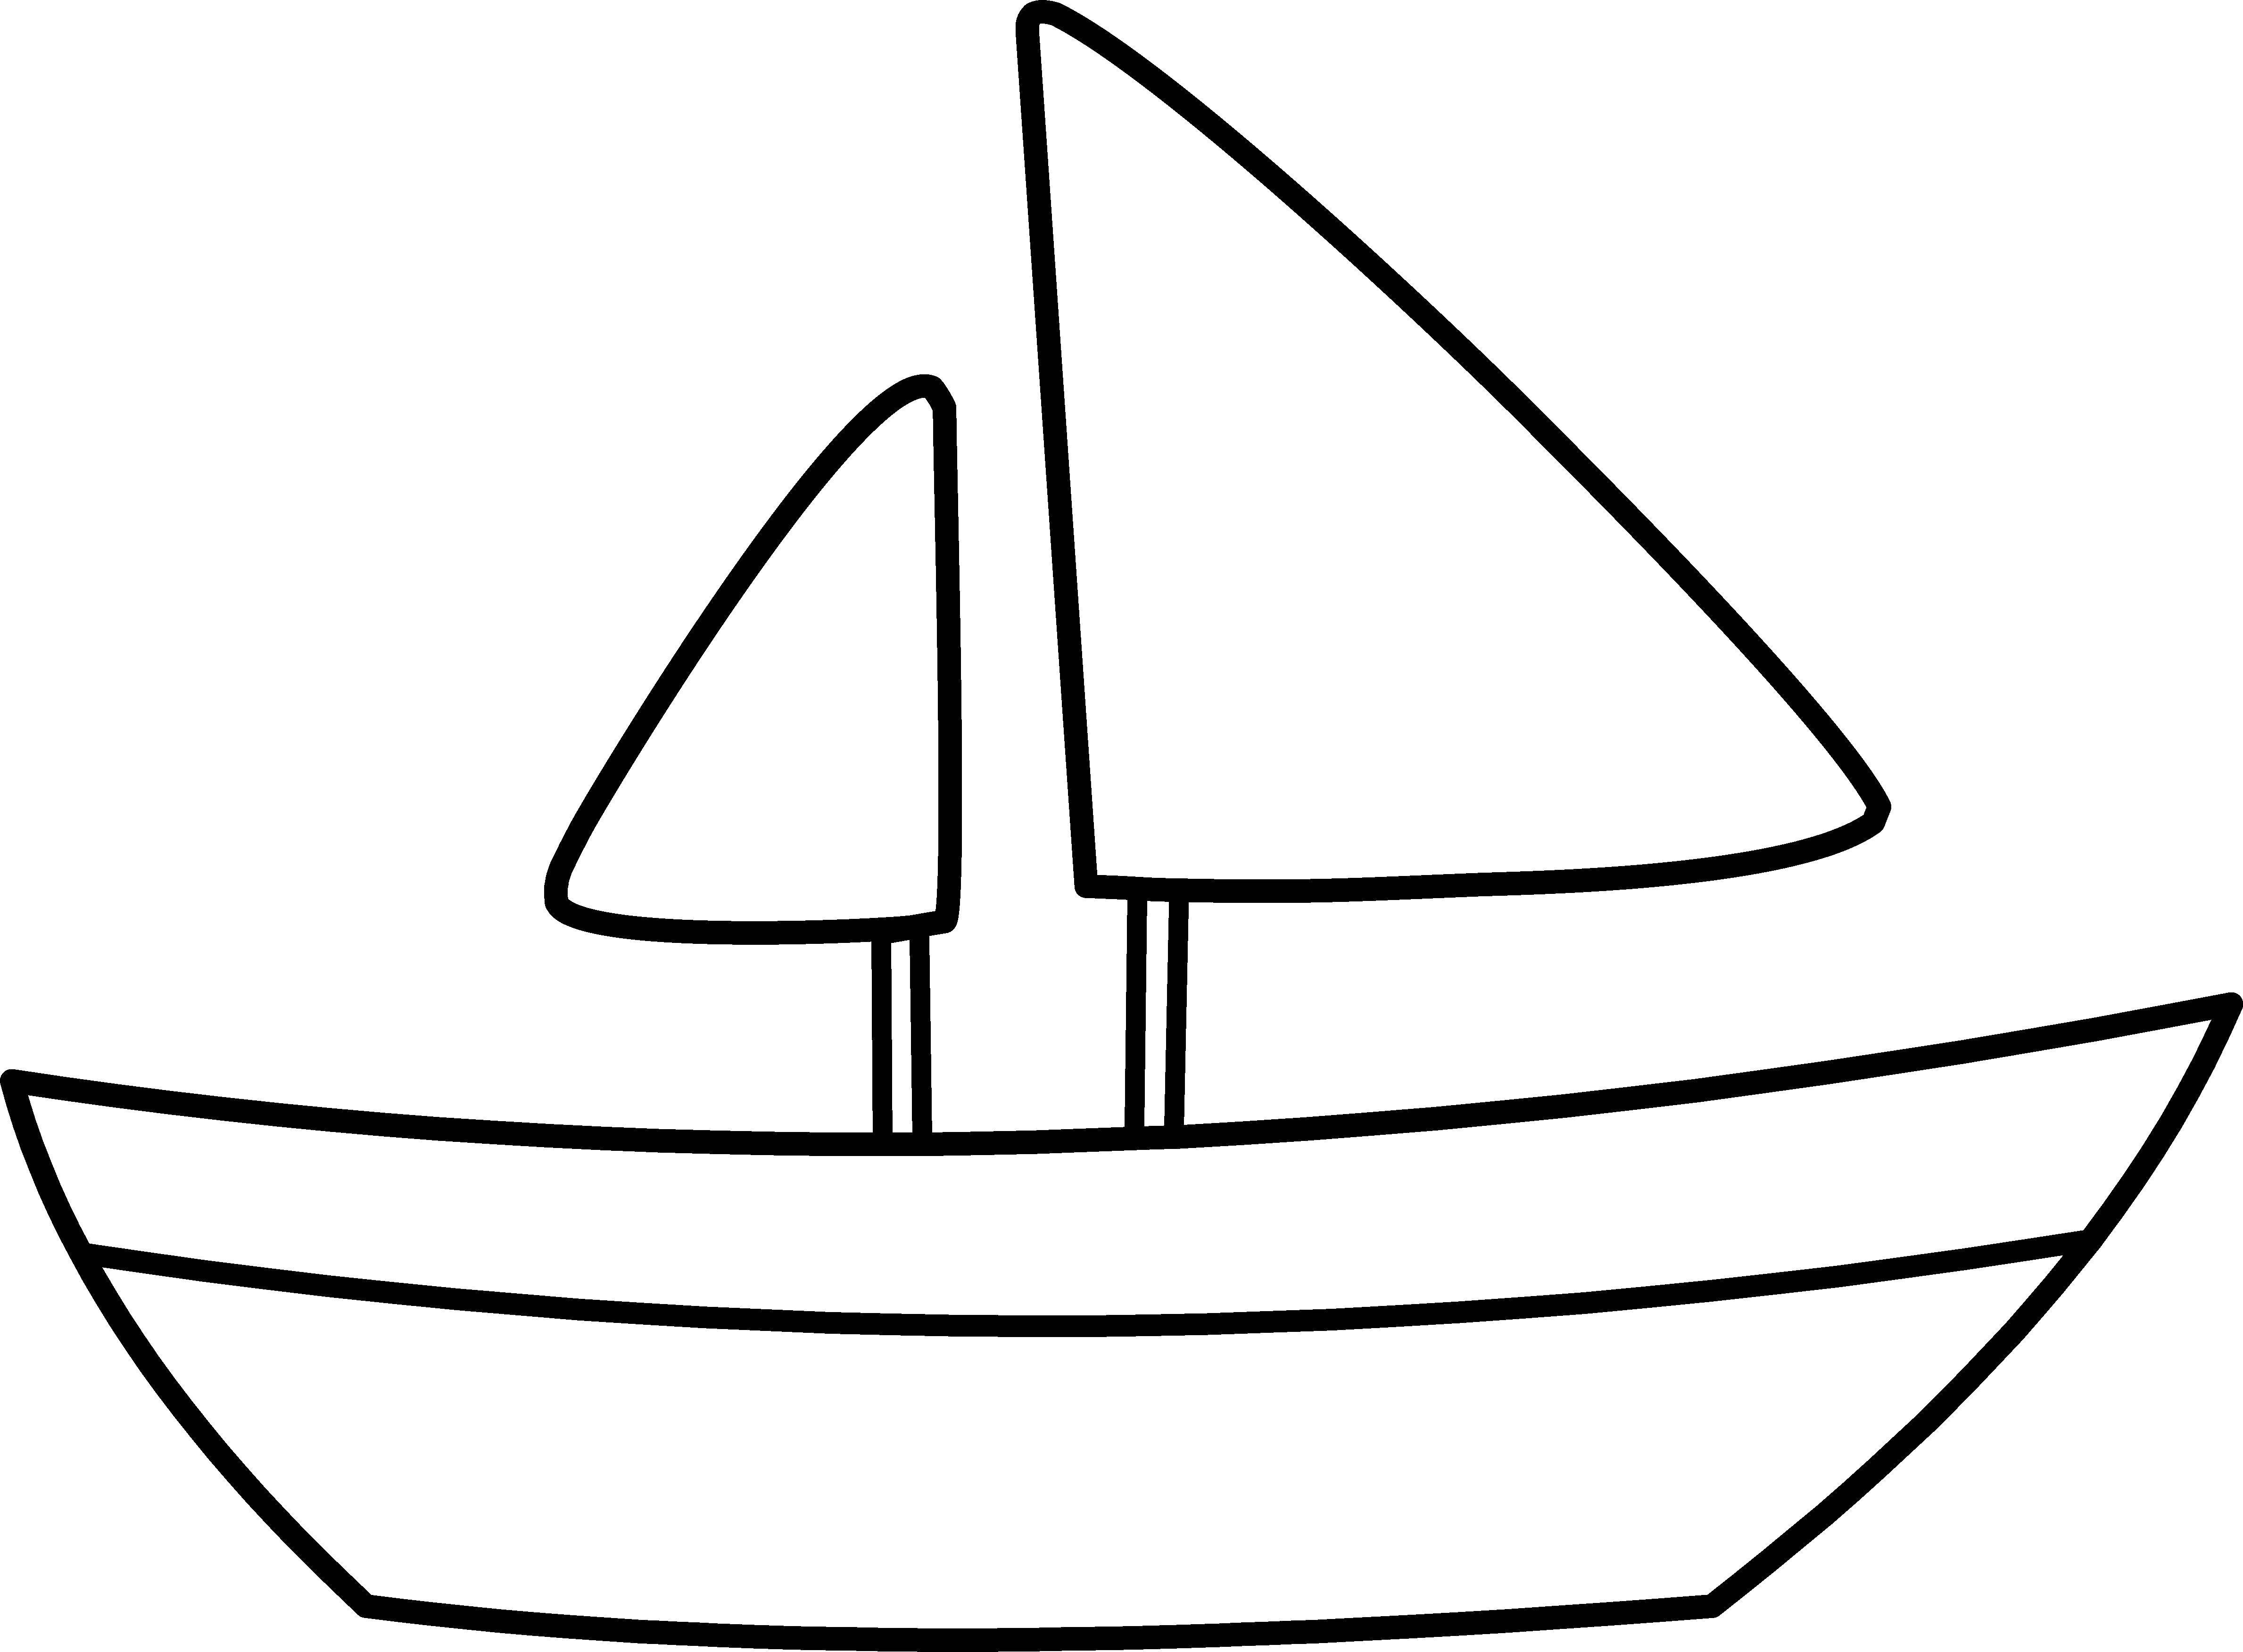 Раскраска Кораблик в синем море, скачать и распечатать раскраску раздела По номерам